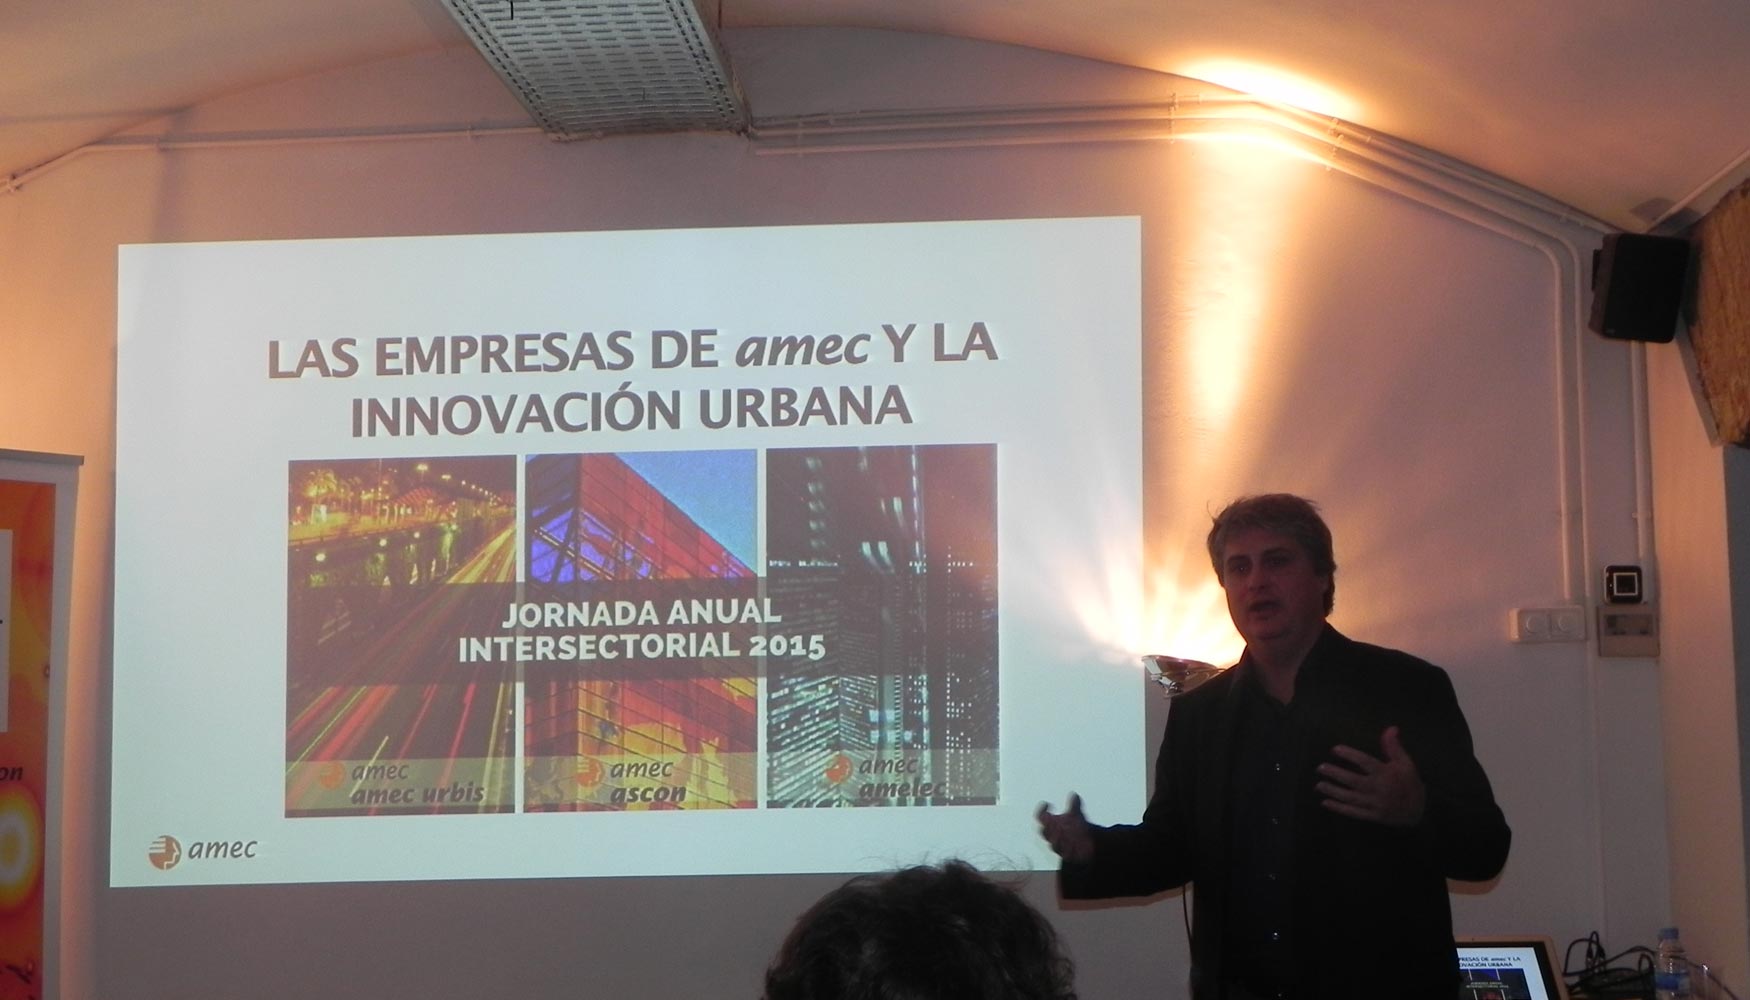 Diego Guri habl sobre Las empresas Amec y la innovacin urbana